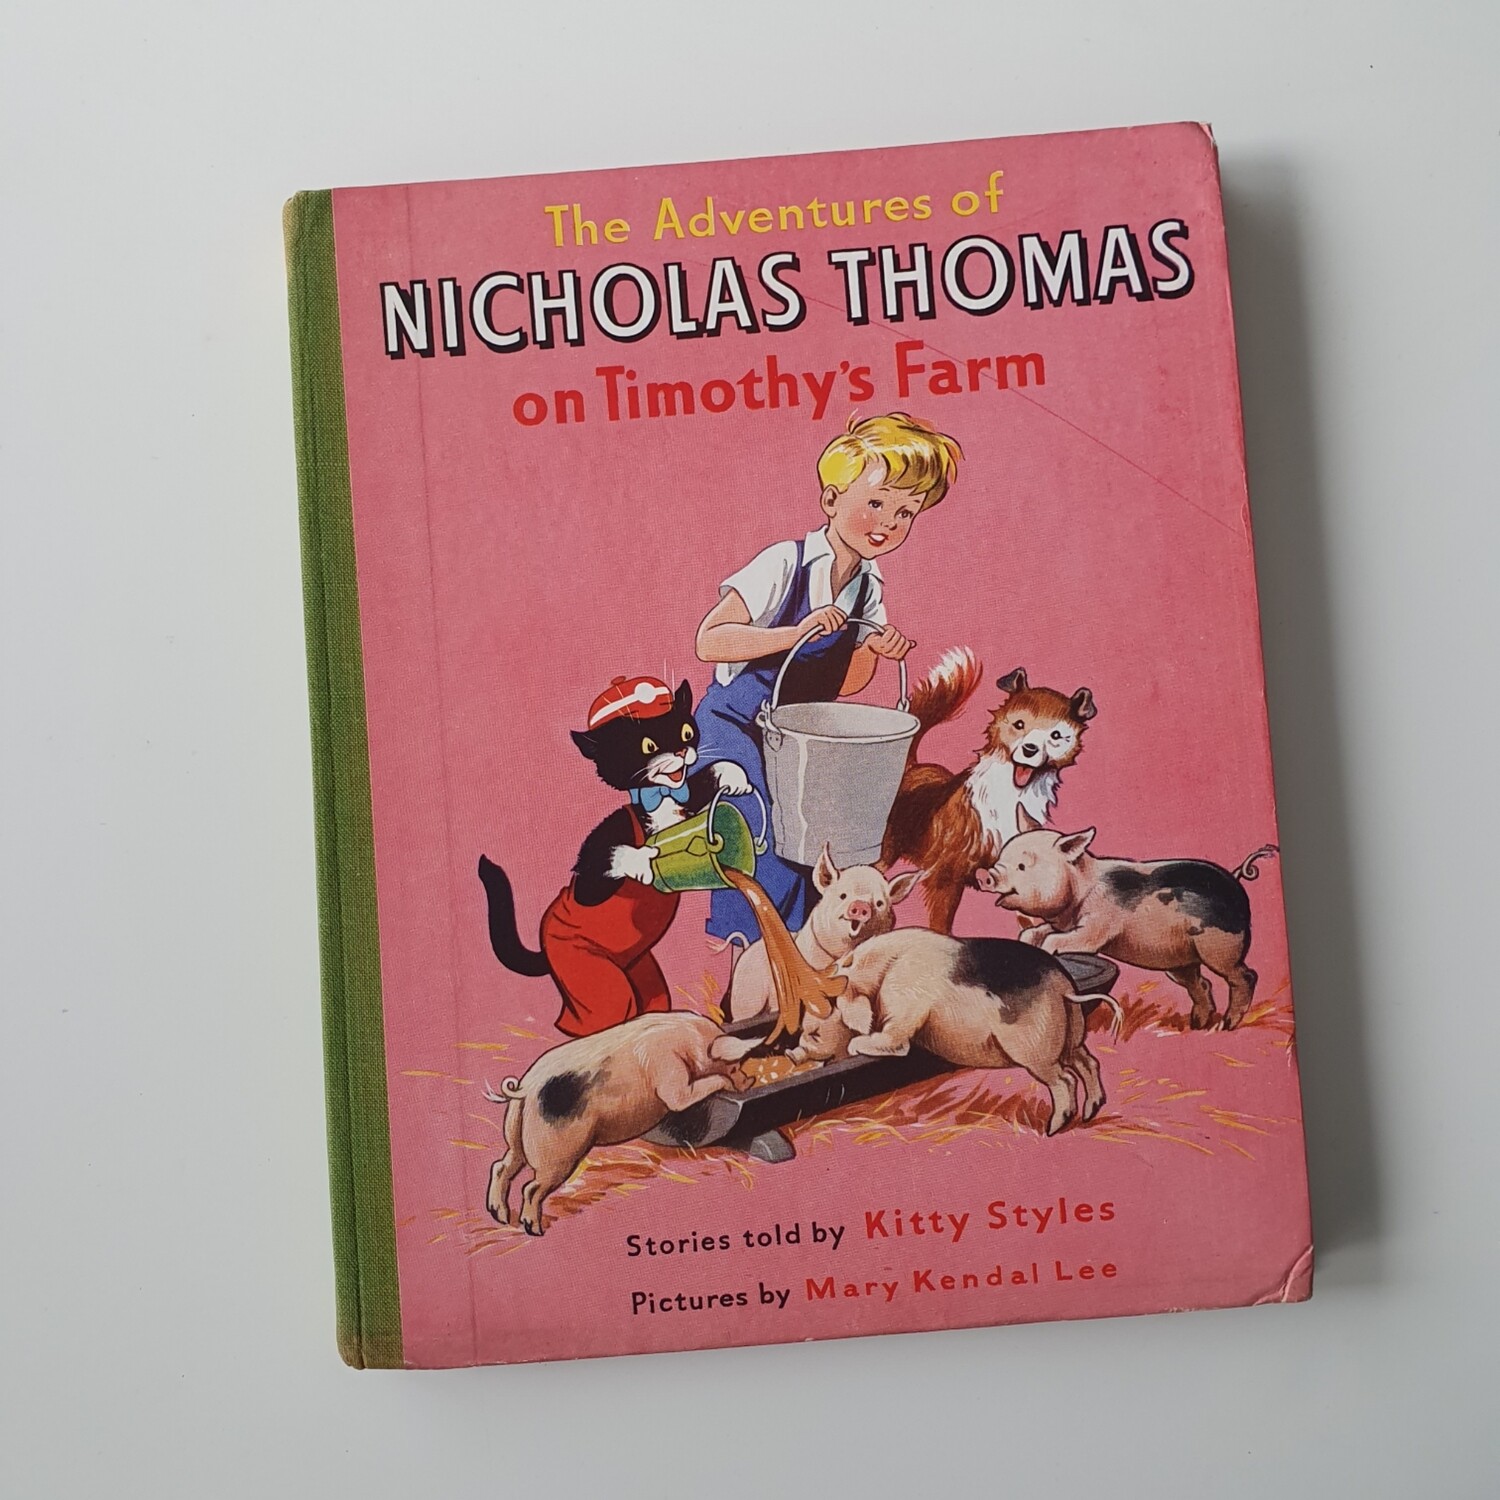 Nicholas Thomas on Timothy's Farm